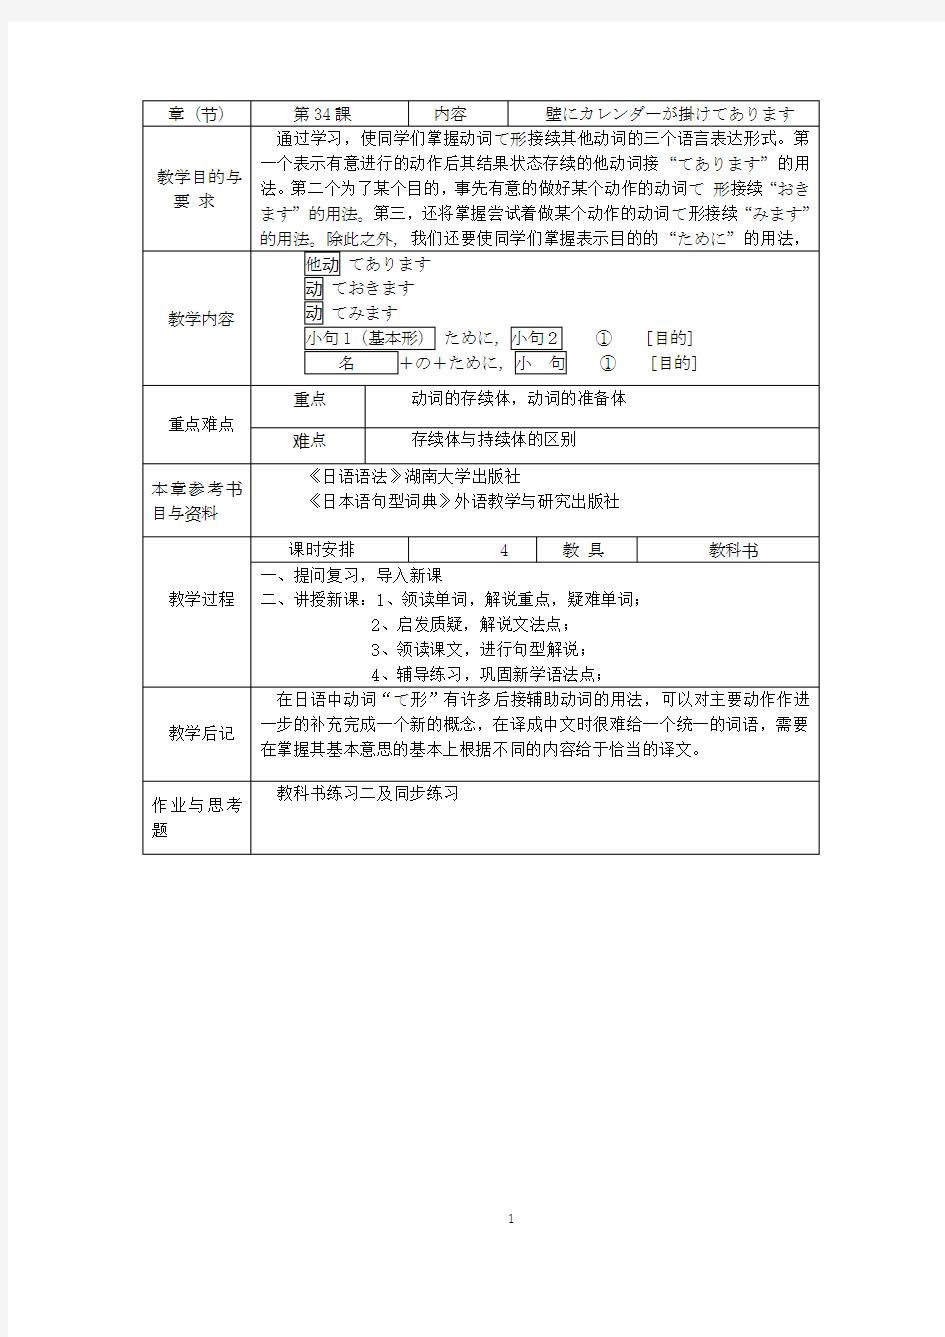 新版中日交流标准日本语初级下第34课教案  壁にカレンダーがかけてあります